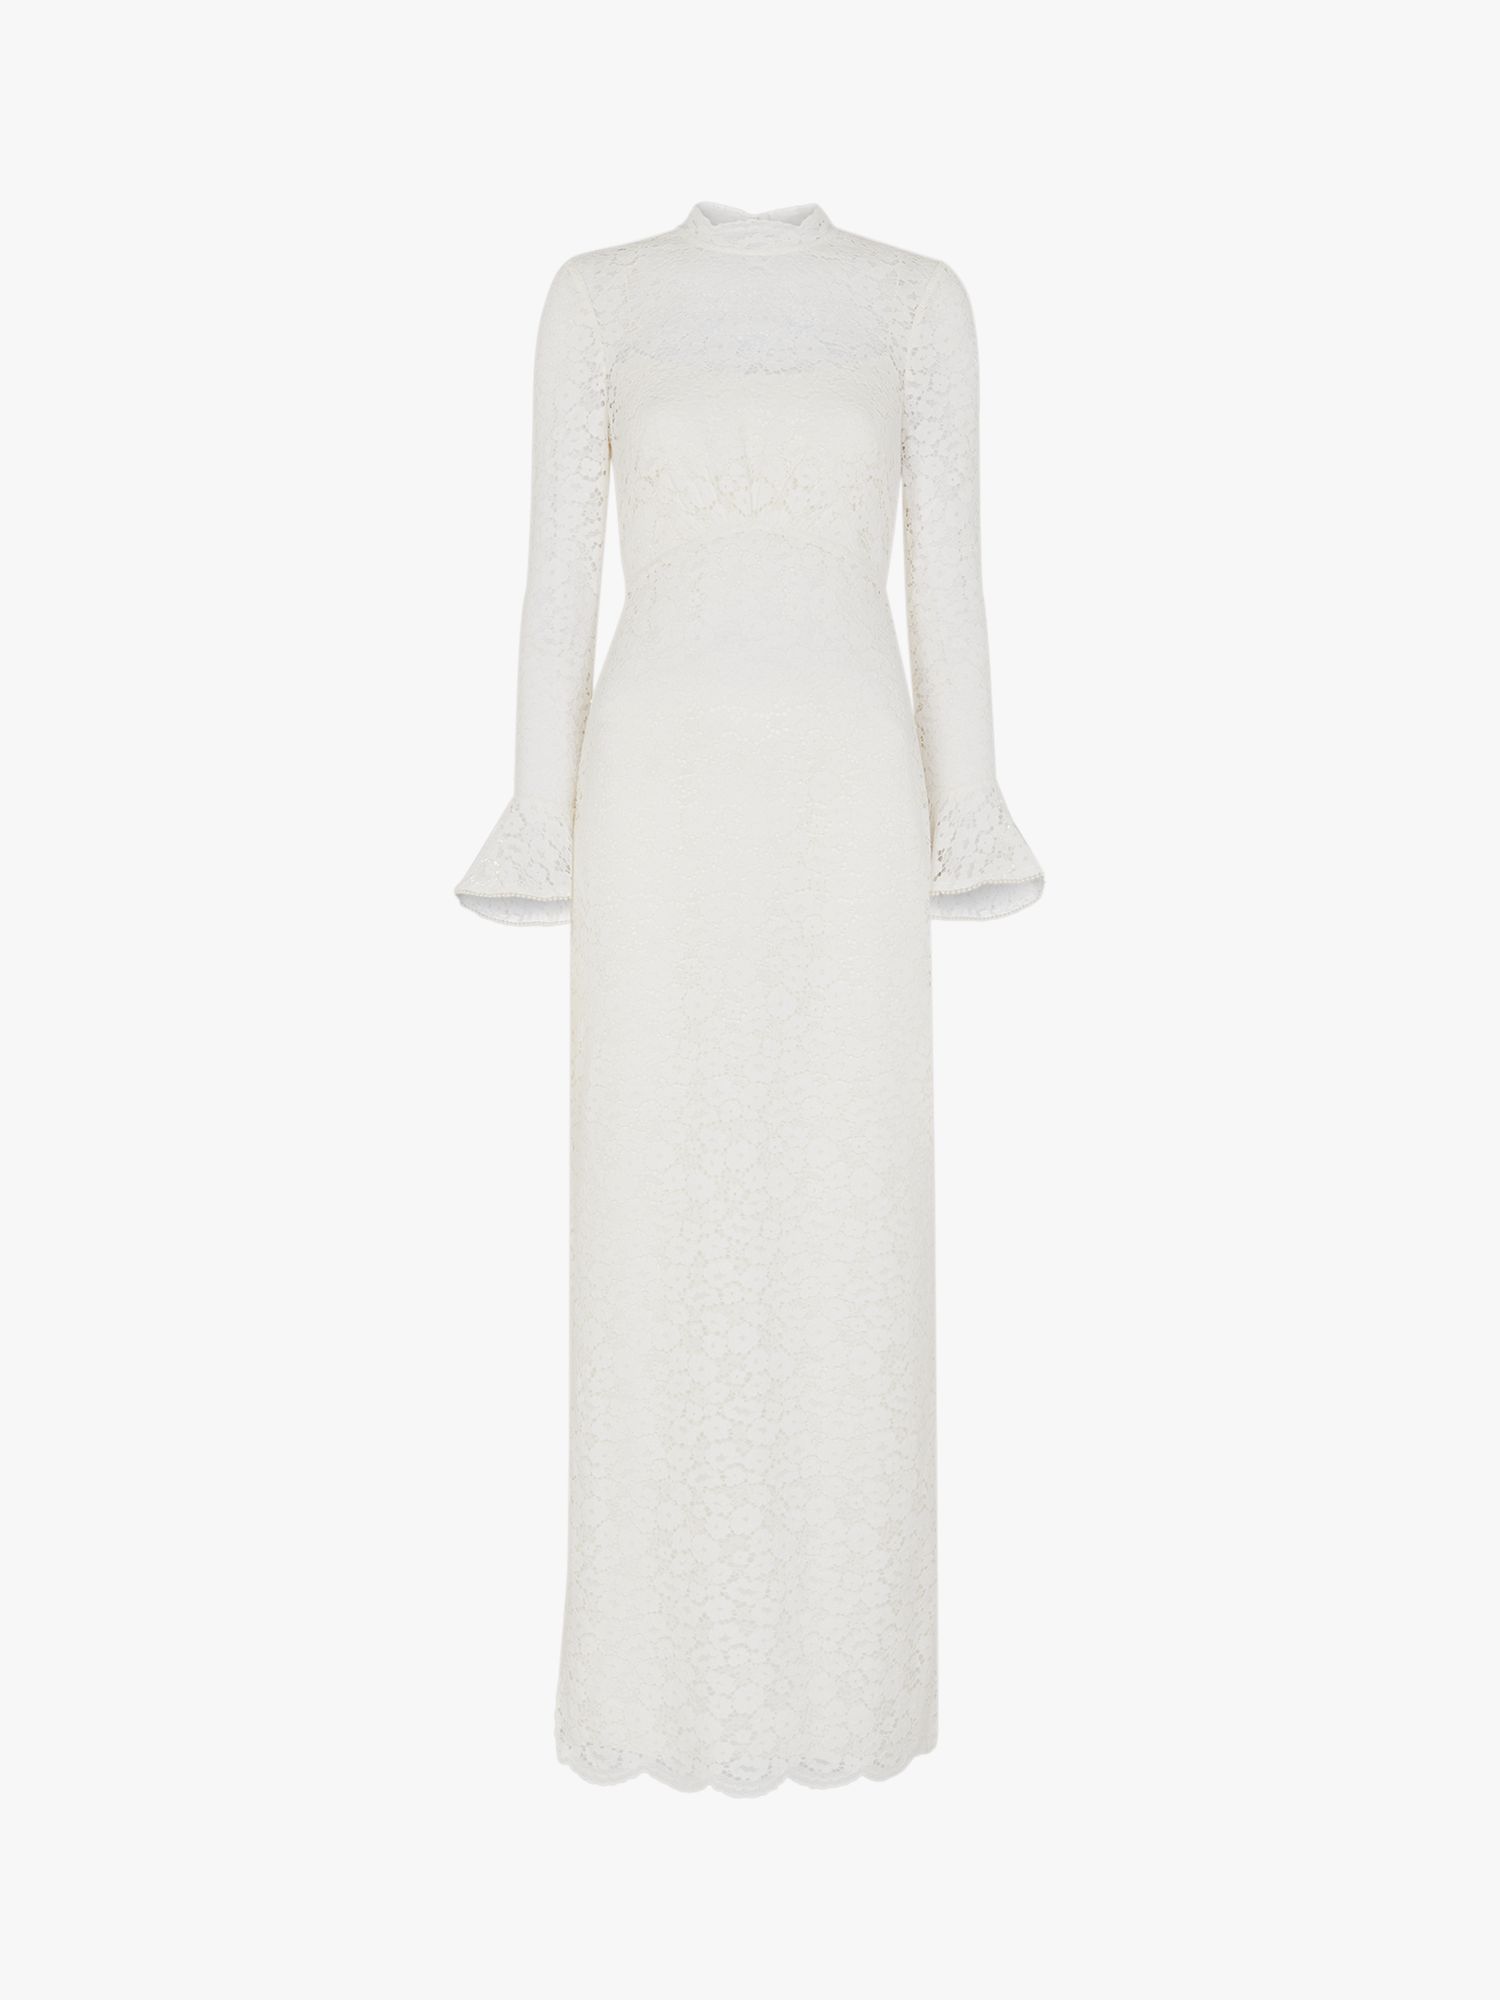 Whistles Frances Lace Wedding Dress, Ivory, 6